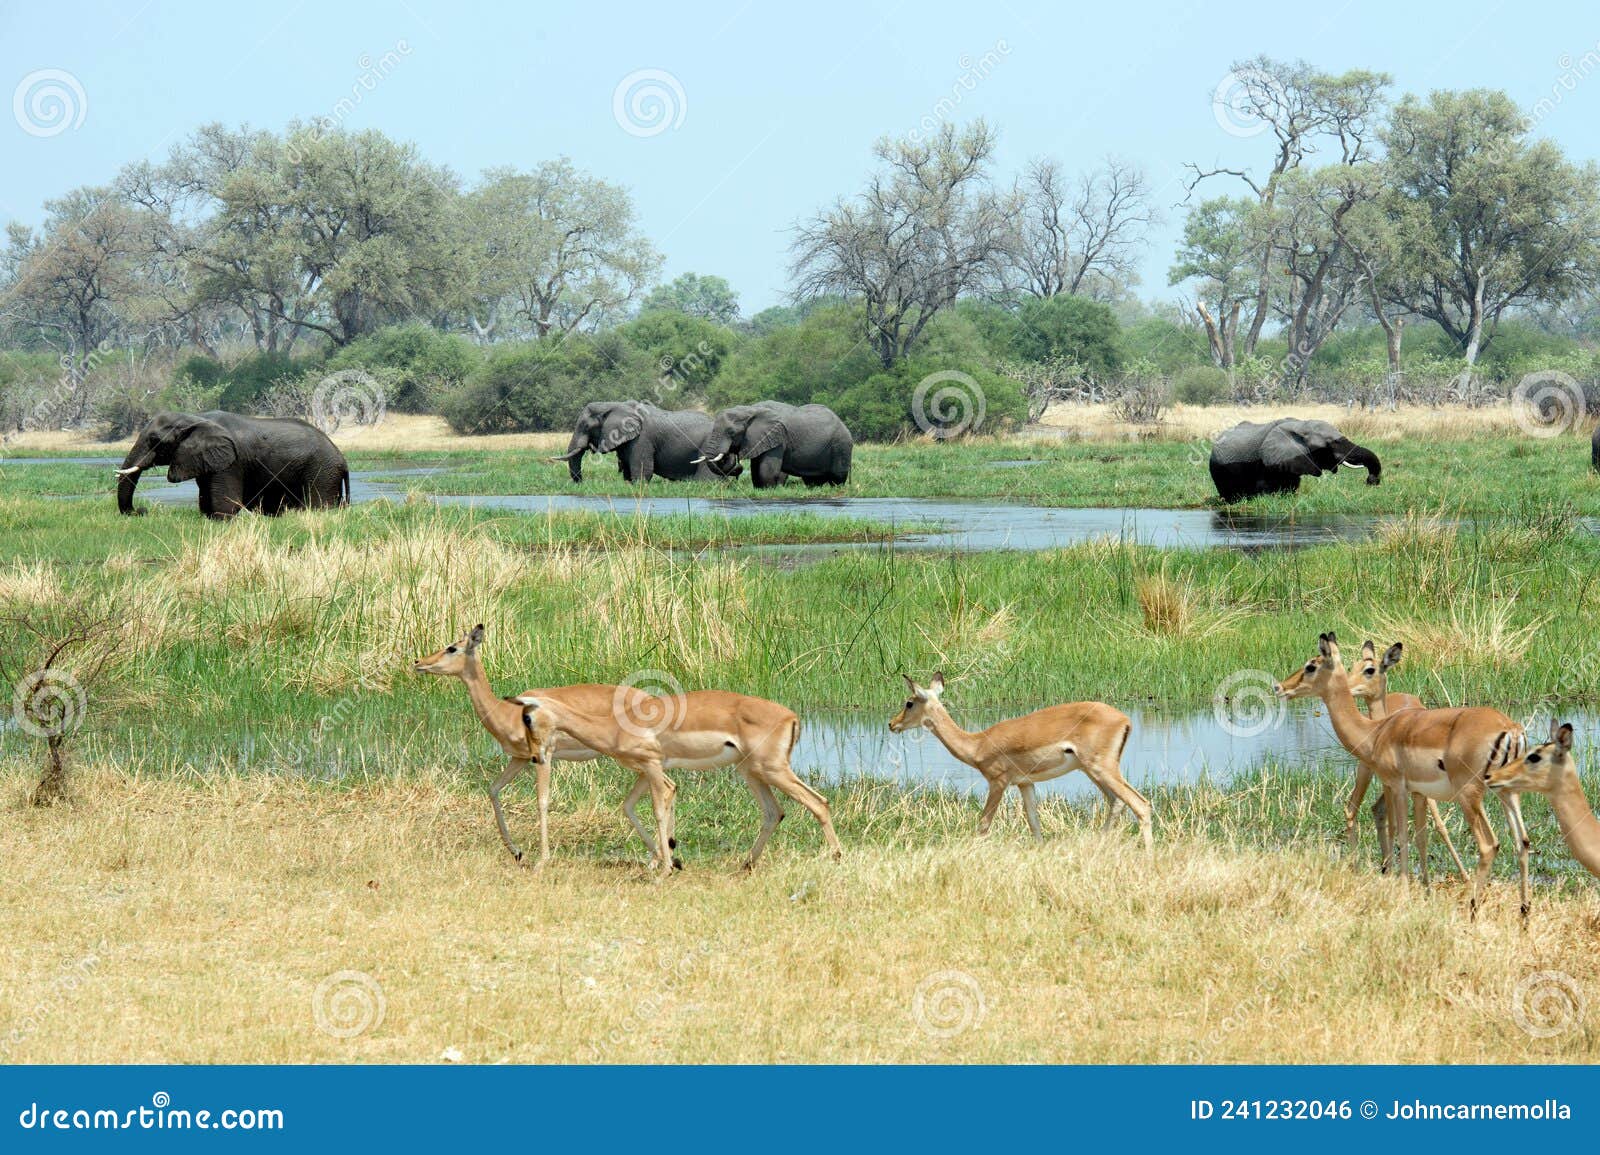 elephants and impala graze.